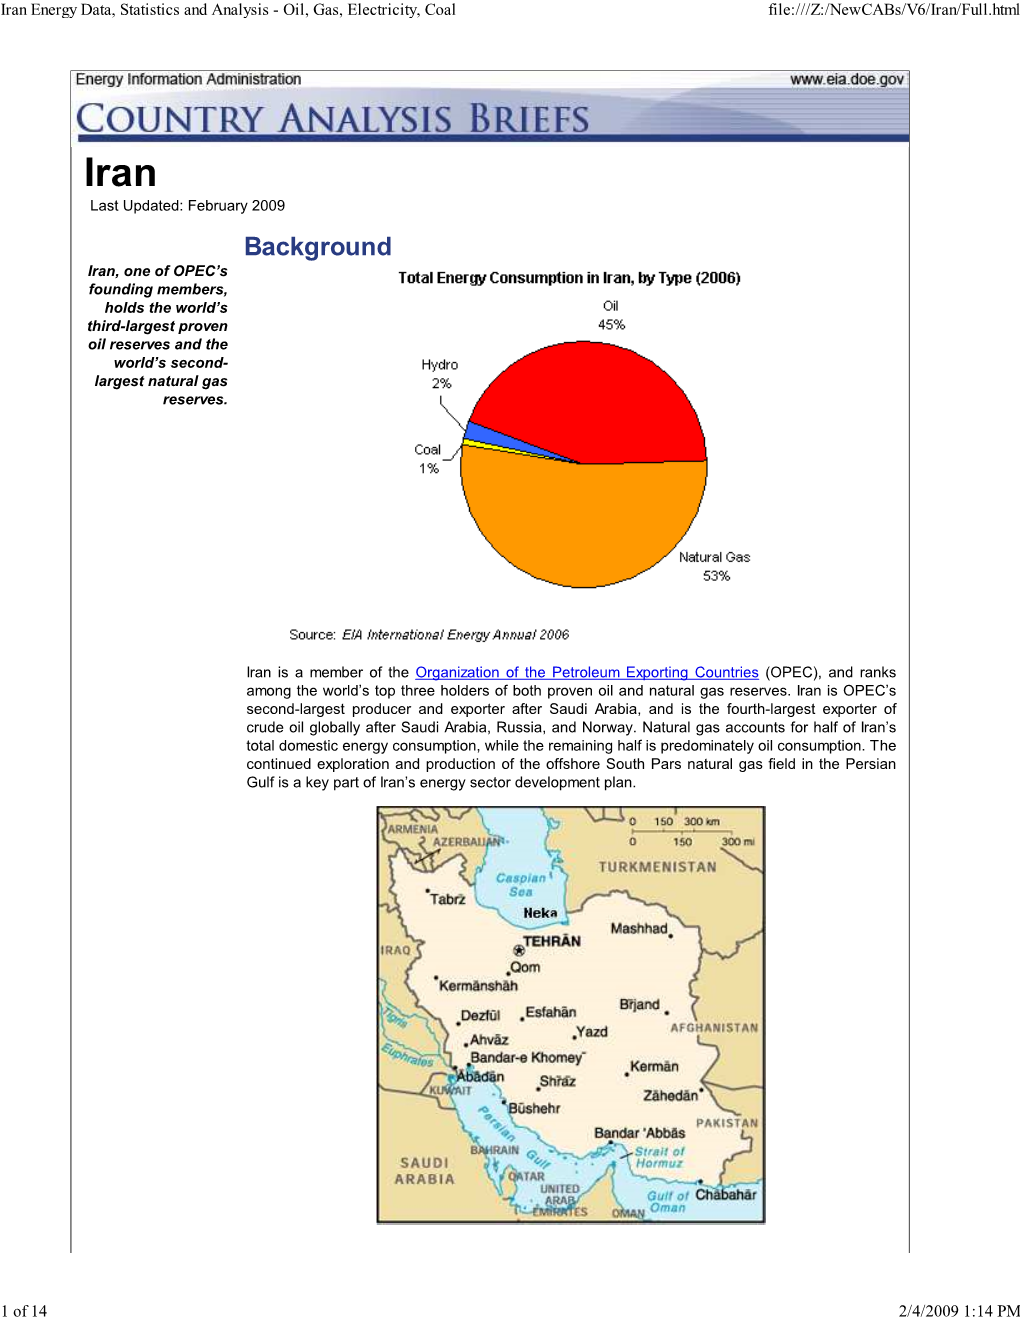 US DOE: Iran Country Brief